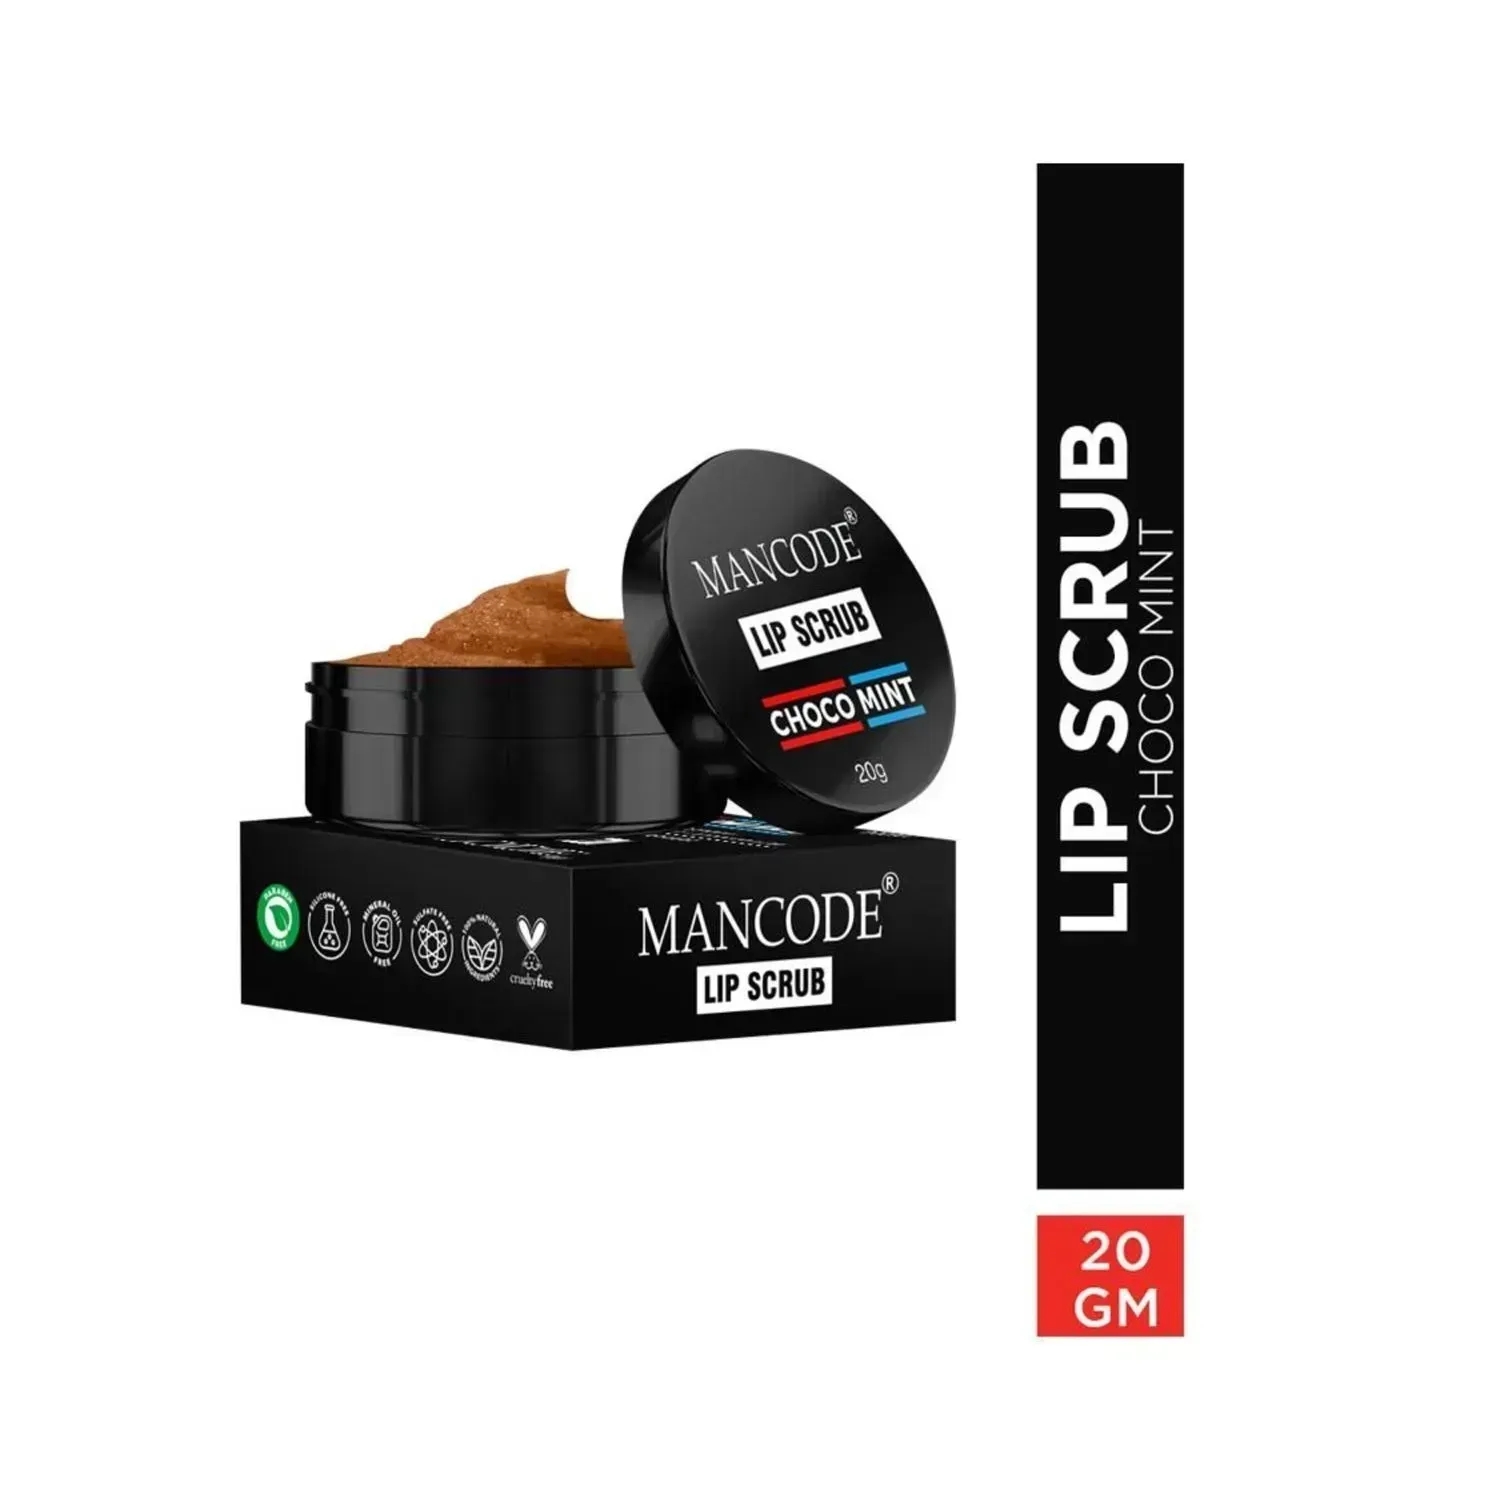 Mancode | Mancode Choco Mint Lip Scrub - (20g)